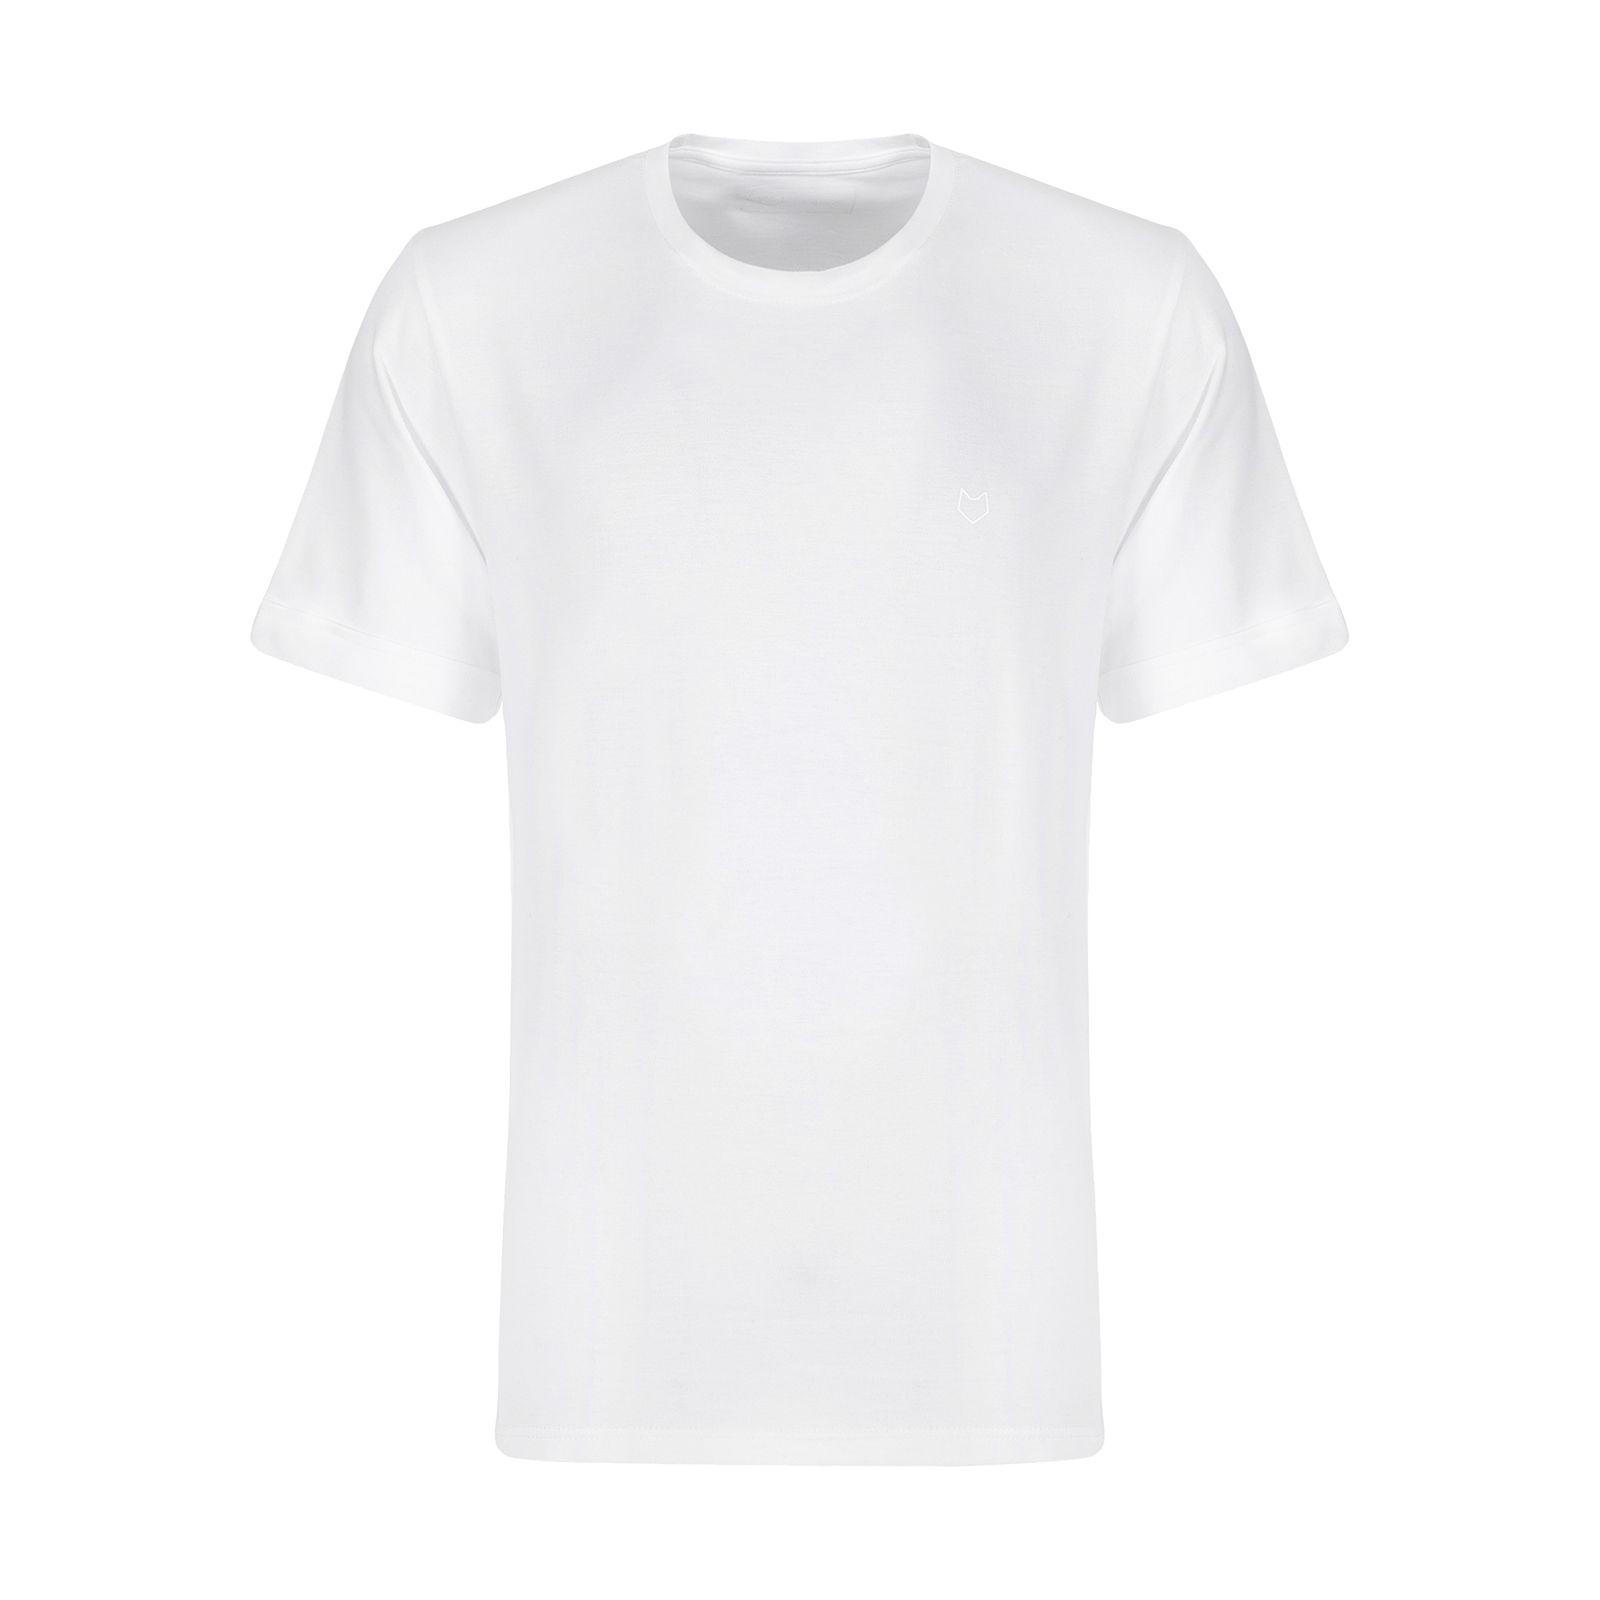 تی شرت ورزشی مردانه مل اند موژ مدل M07615-002 -  - 1